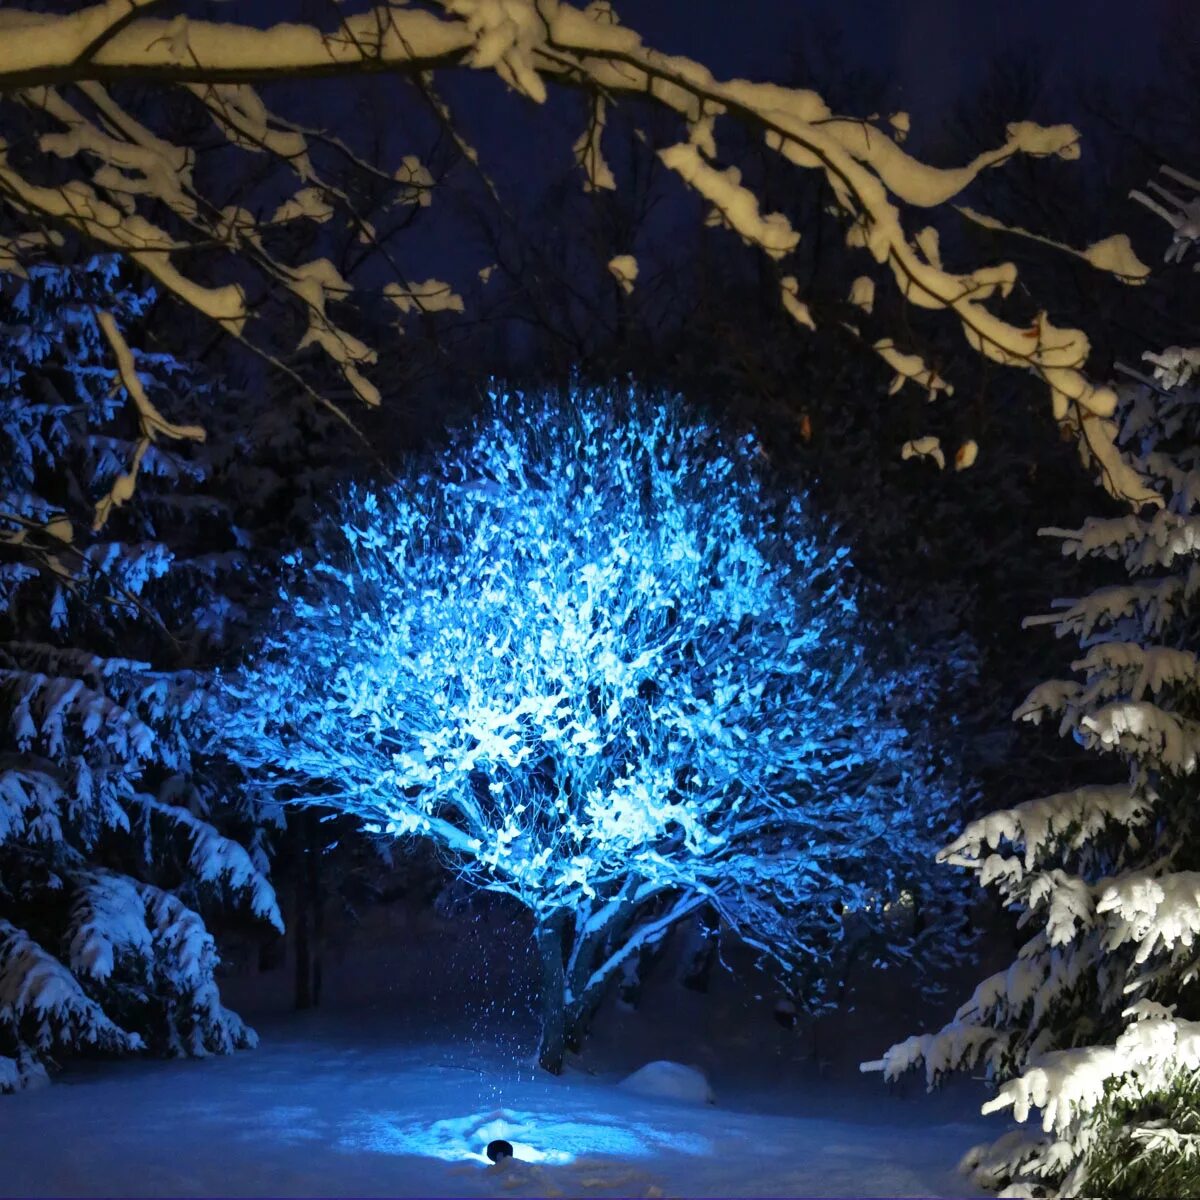 РГБ подсветка деревьев. Подсветка деревьев зимой. Подсветка деревьев прожекторами. Подсветка деревьев снизу.